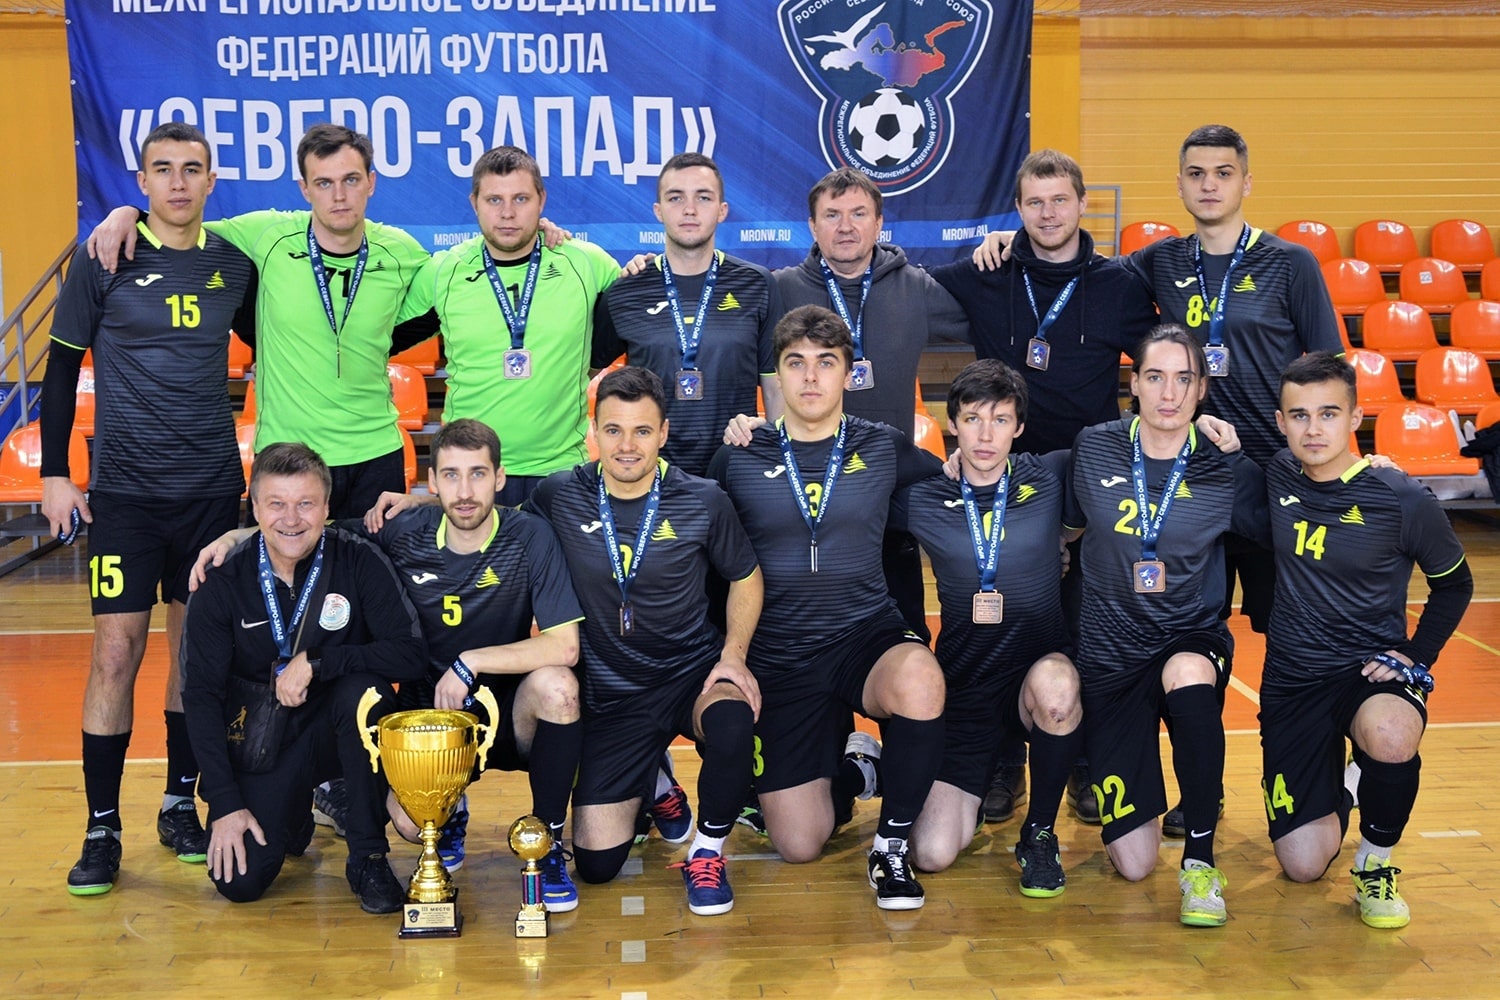   Кубок МРО « Северо-Запад» по мини-футболу среди мужских команд